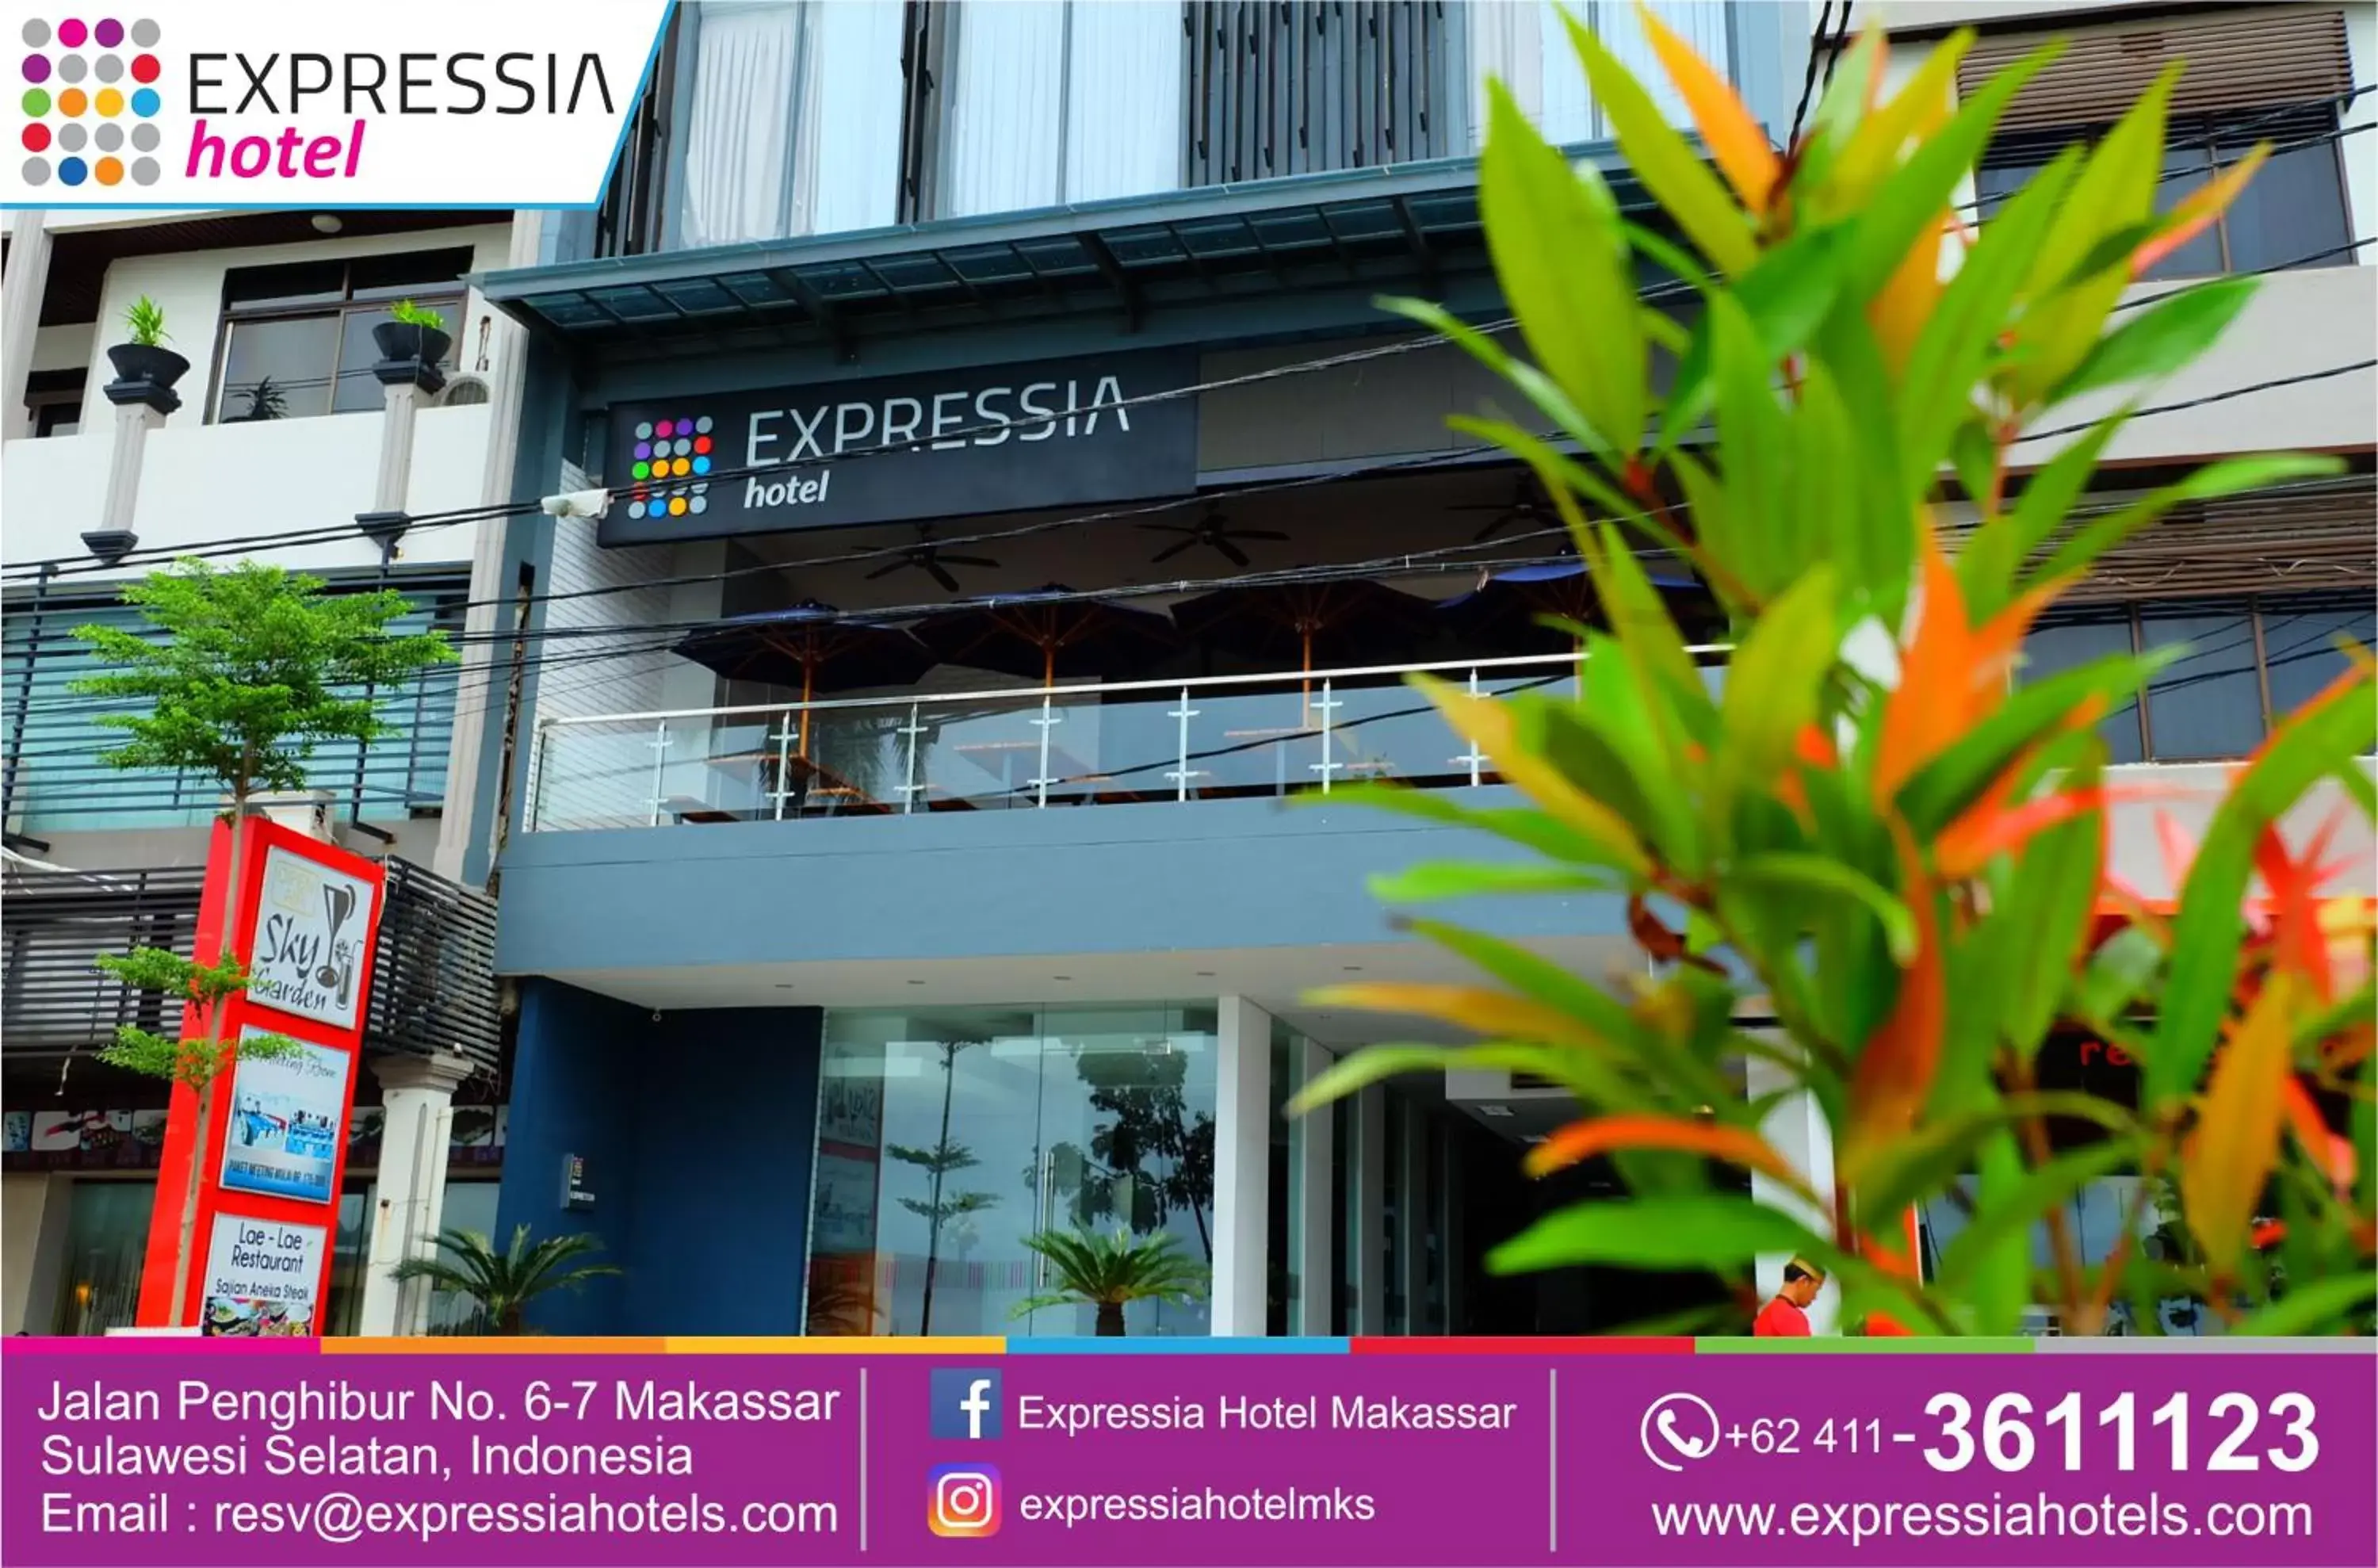 Facade/entrance, Property Logo/Sign in Expressia Hotel Makassar